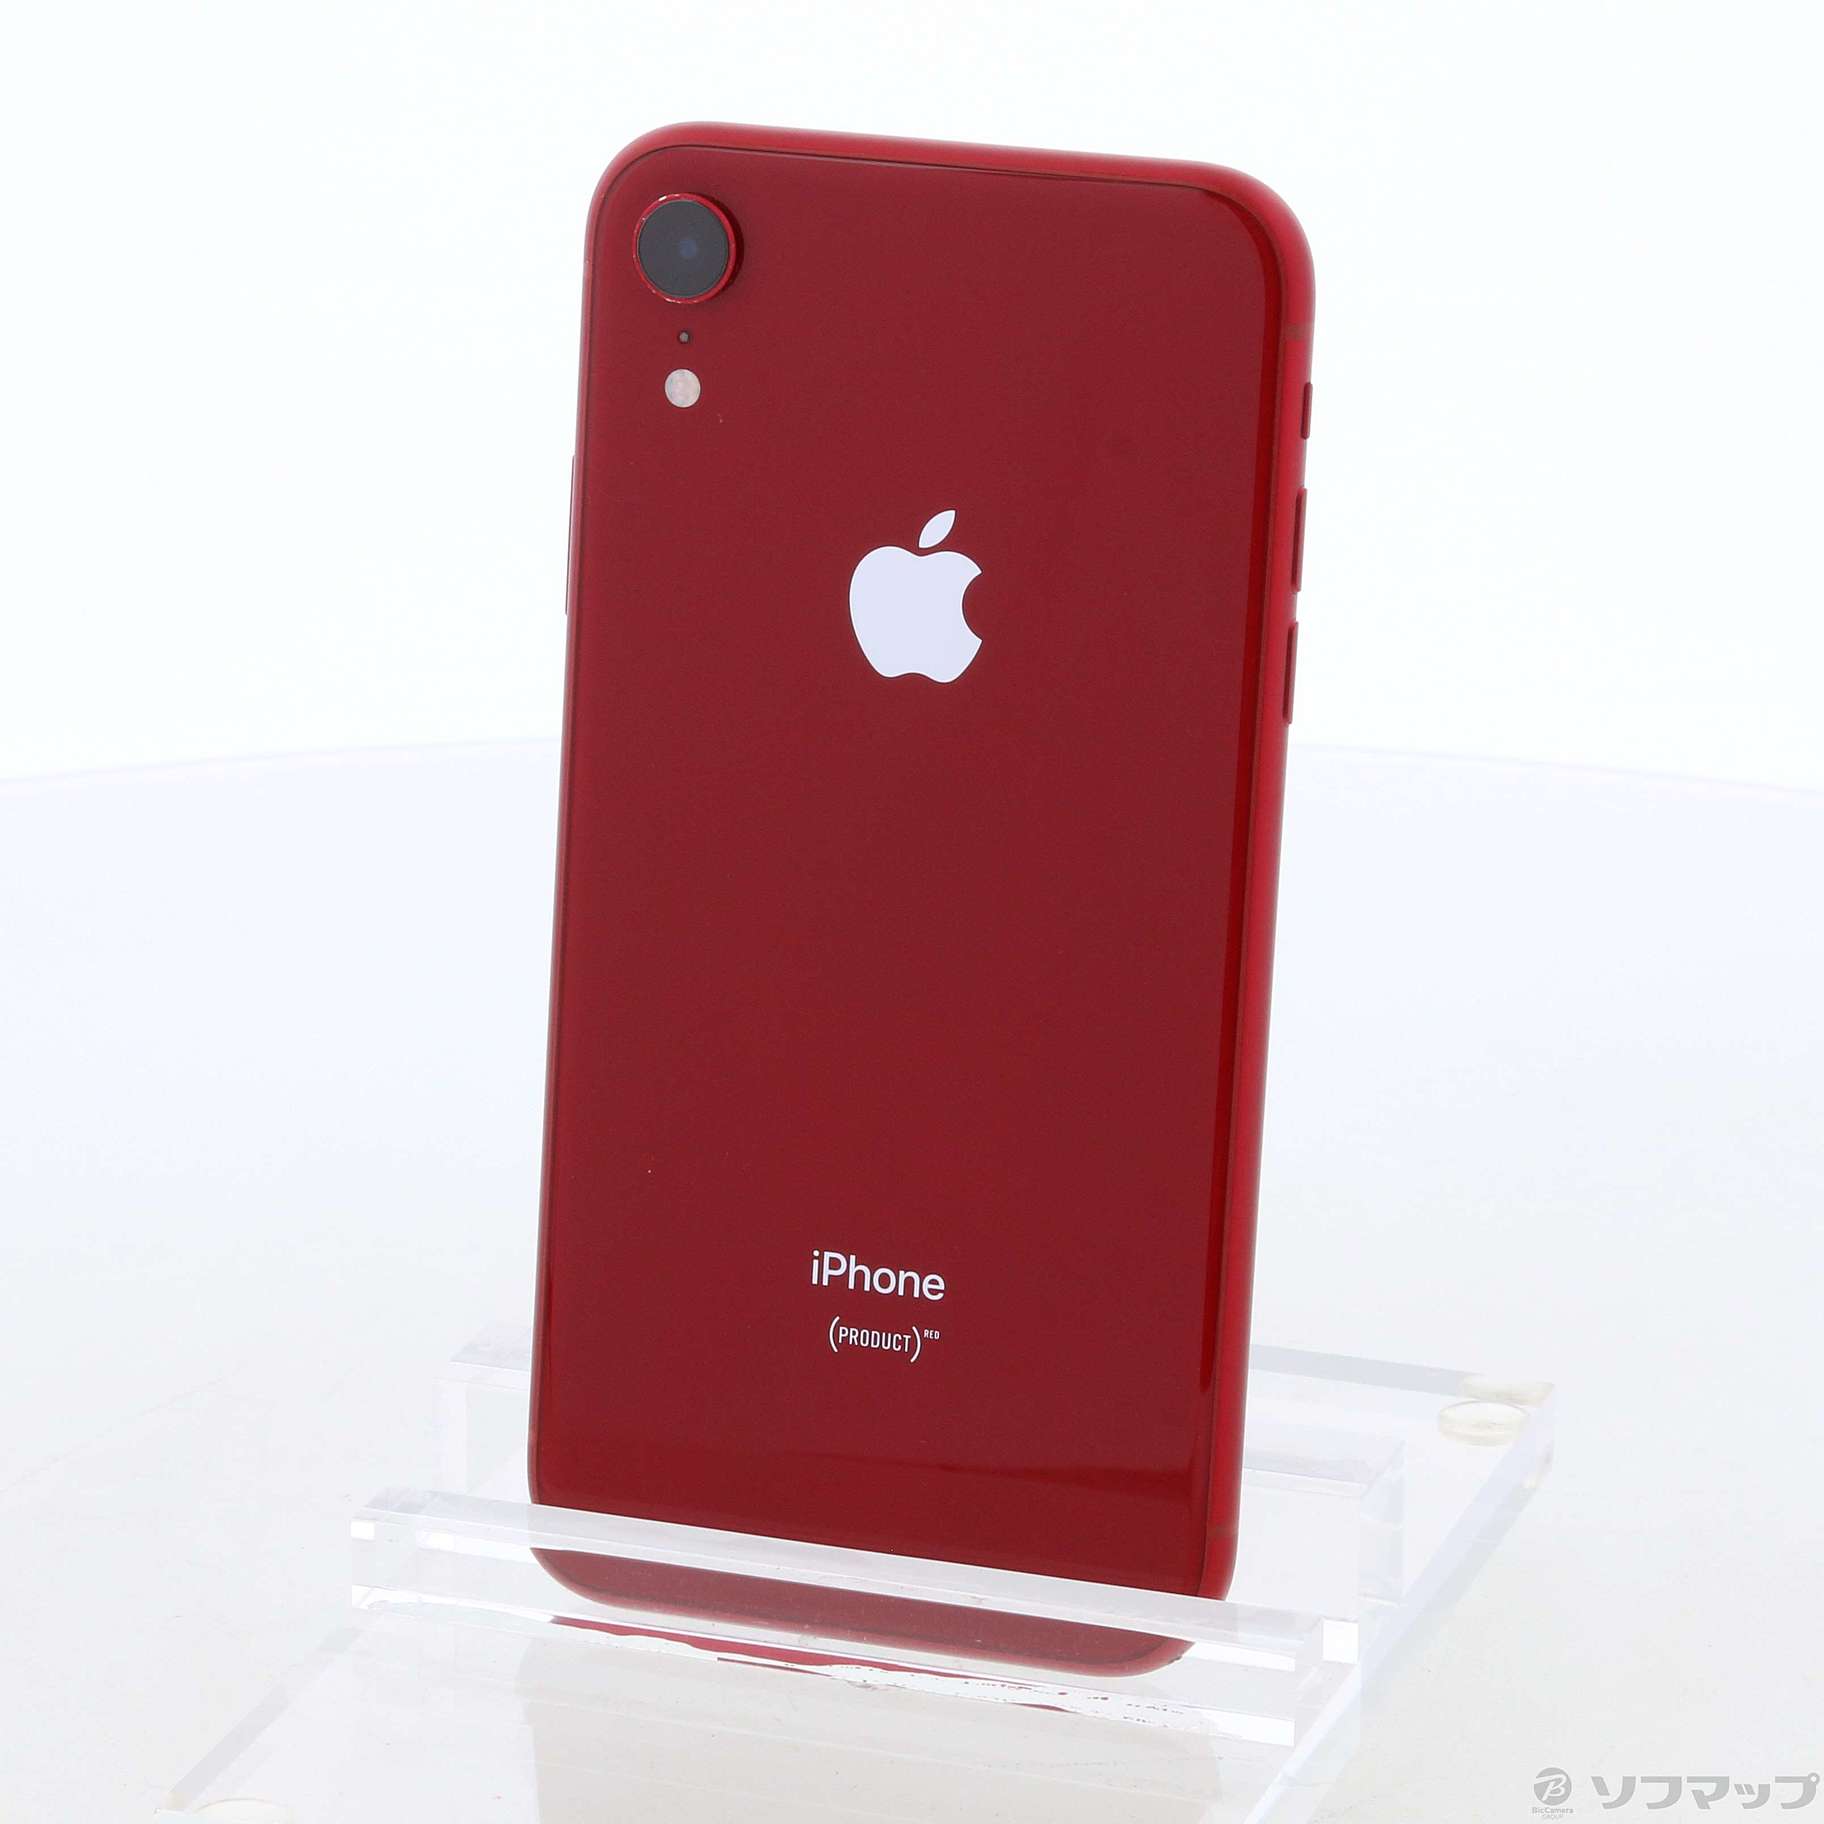 iPhone XR 64 GB Red レッド MT062J/A SIMフリー kamaya-nenryouten.co.jp